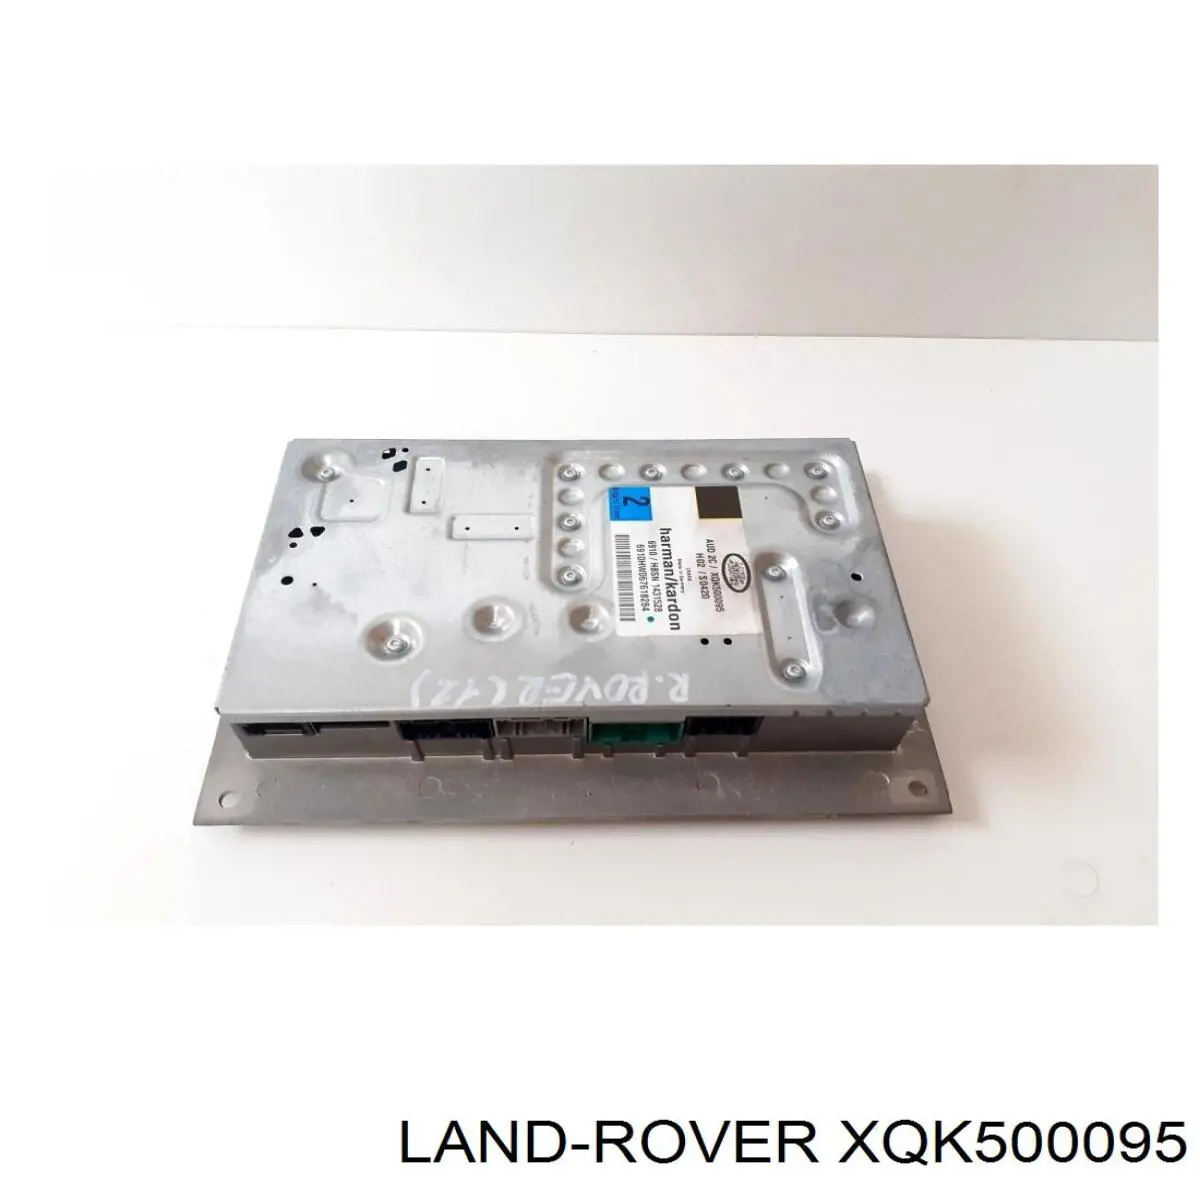 XQK500095 Land Rover amplificador de sistema de audio